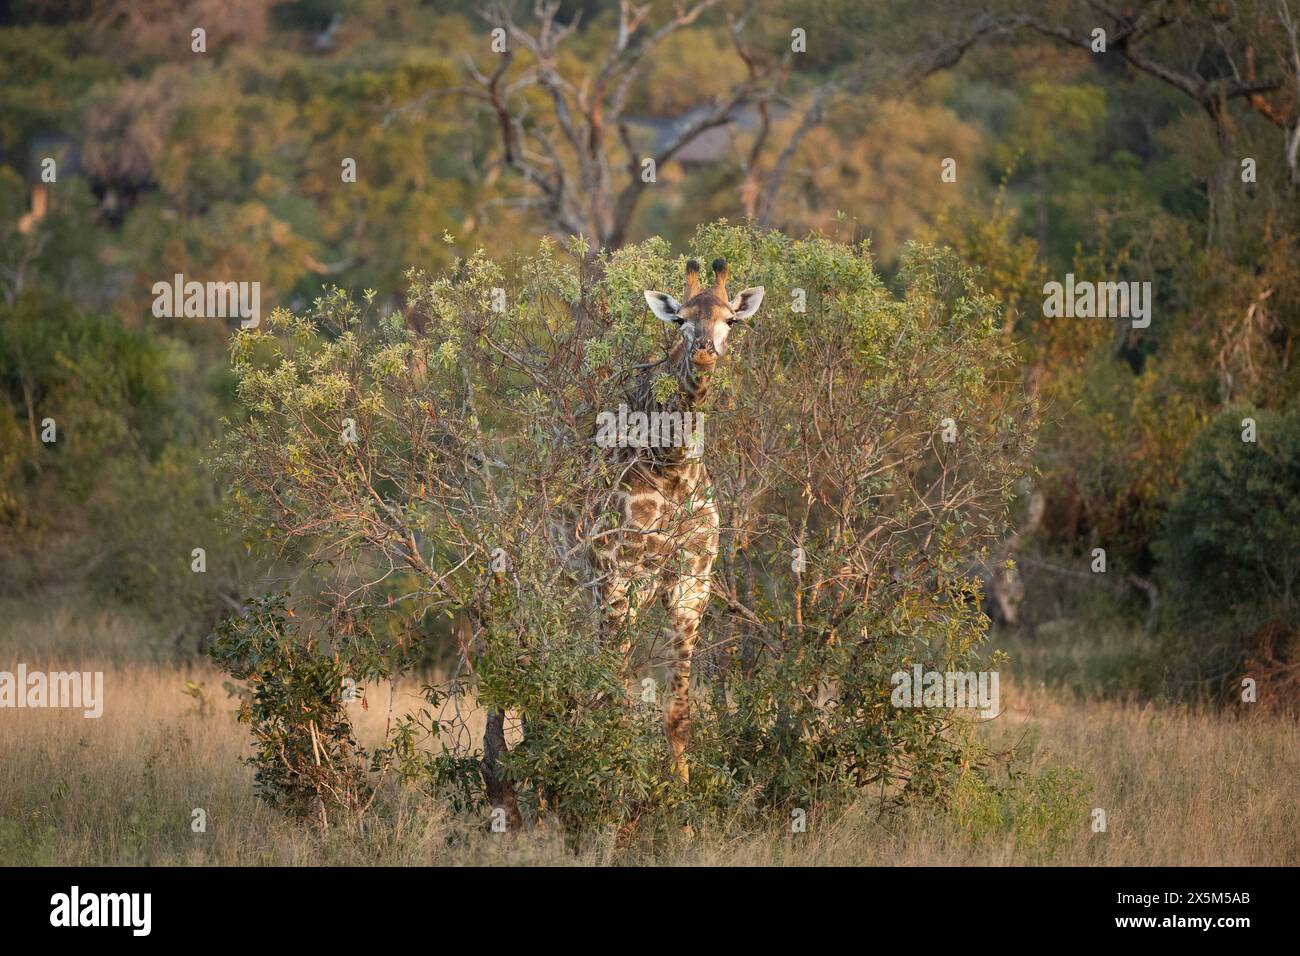 A giraffe, Giraffa, feeding. Stock Photo